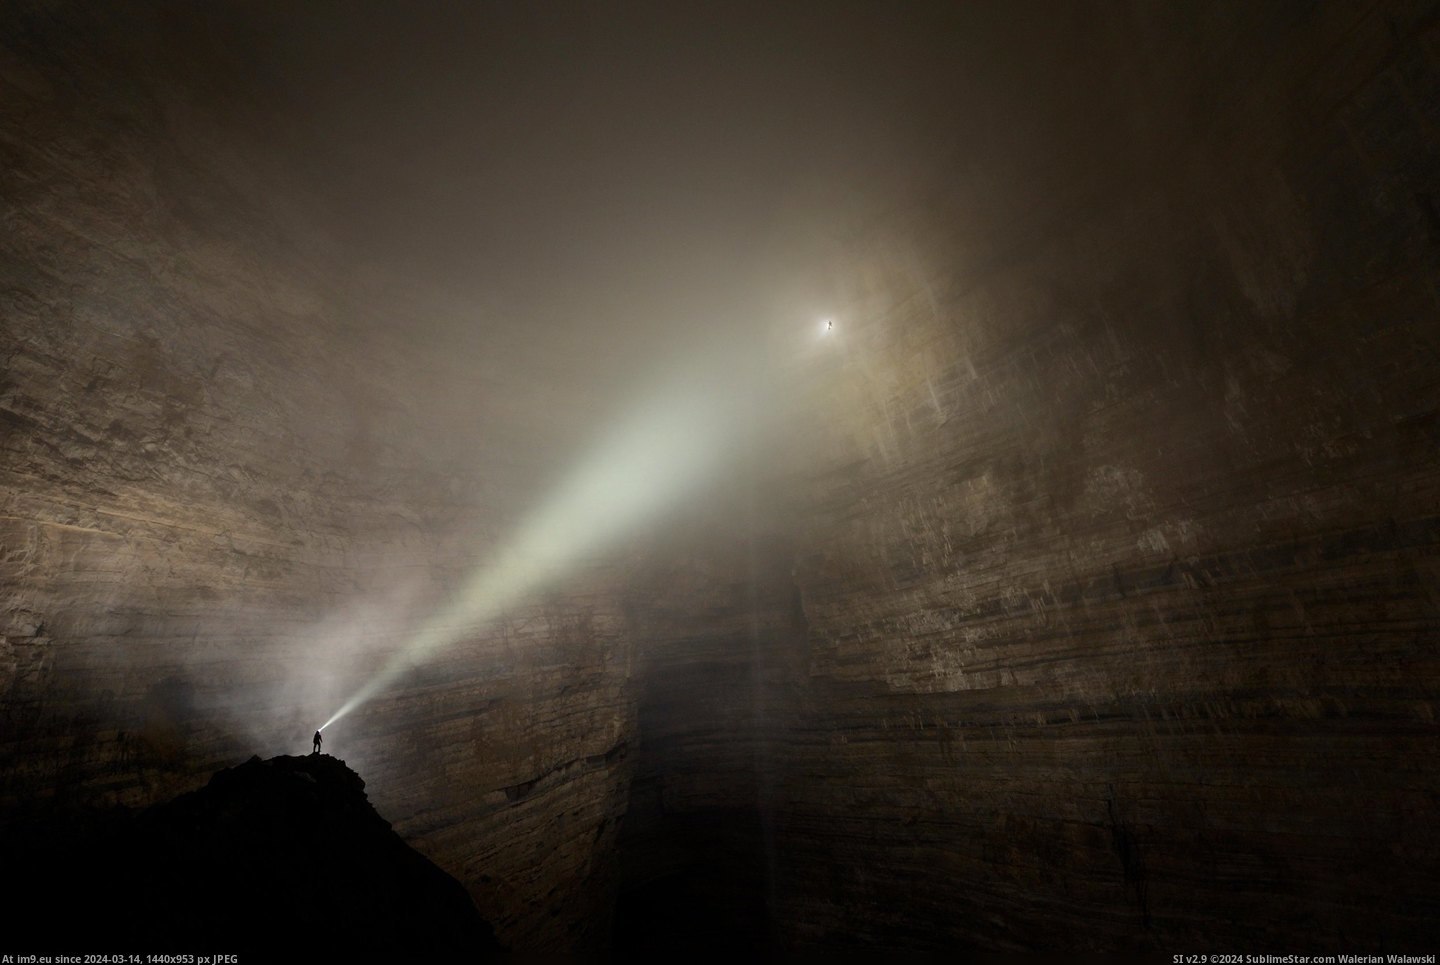 #Big #Caves #Idea [Pics] I had no idea caves could be this big Pic. (Image of album My r/PICS favs))